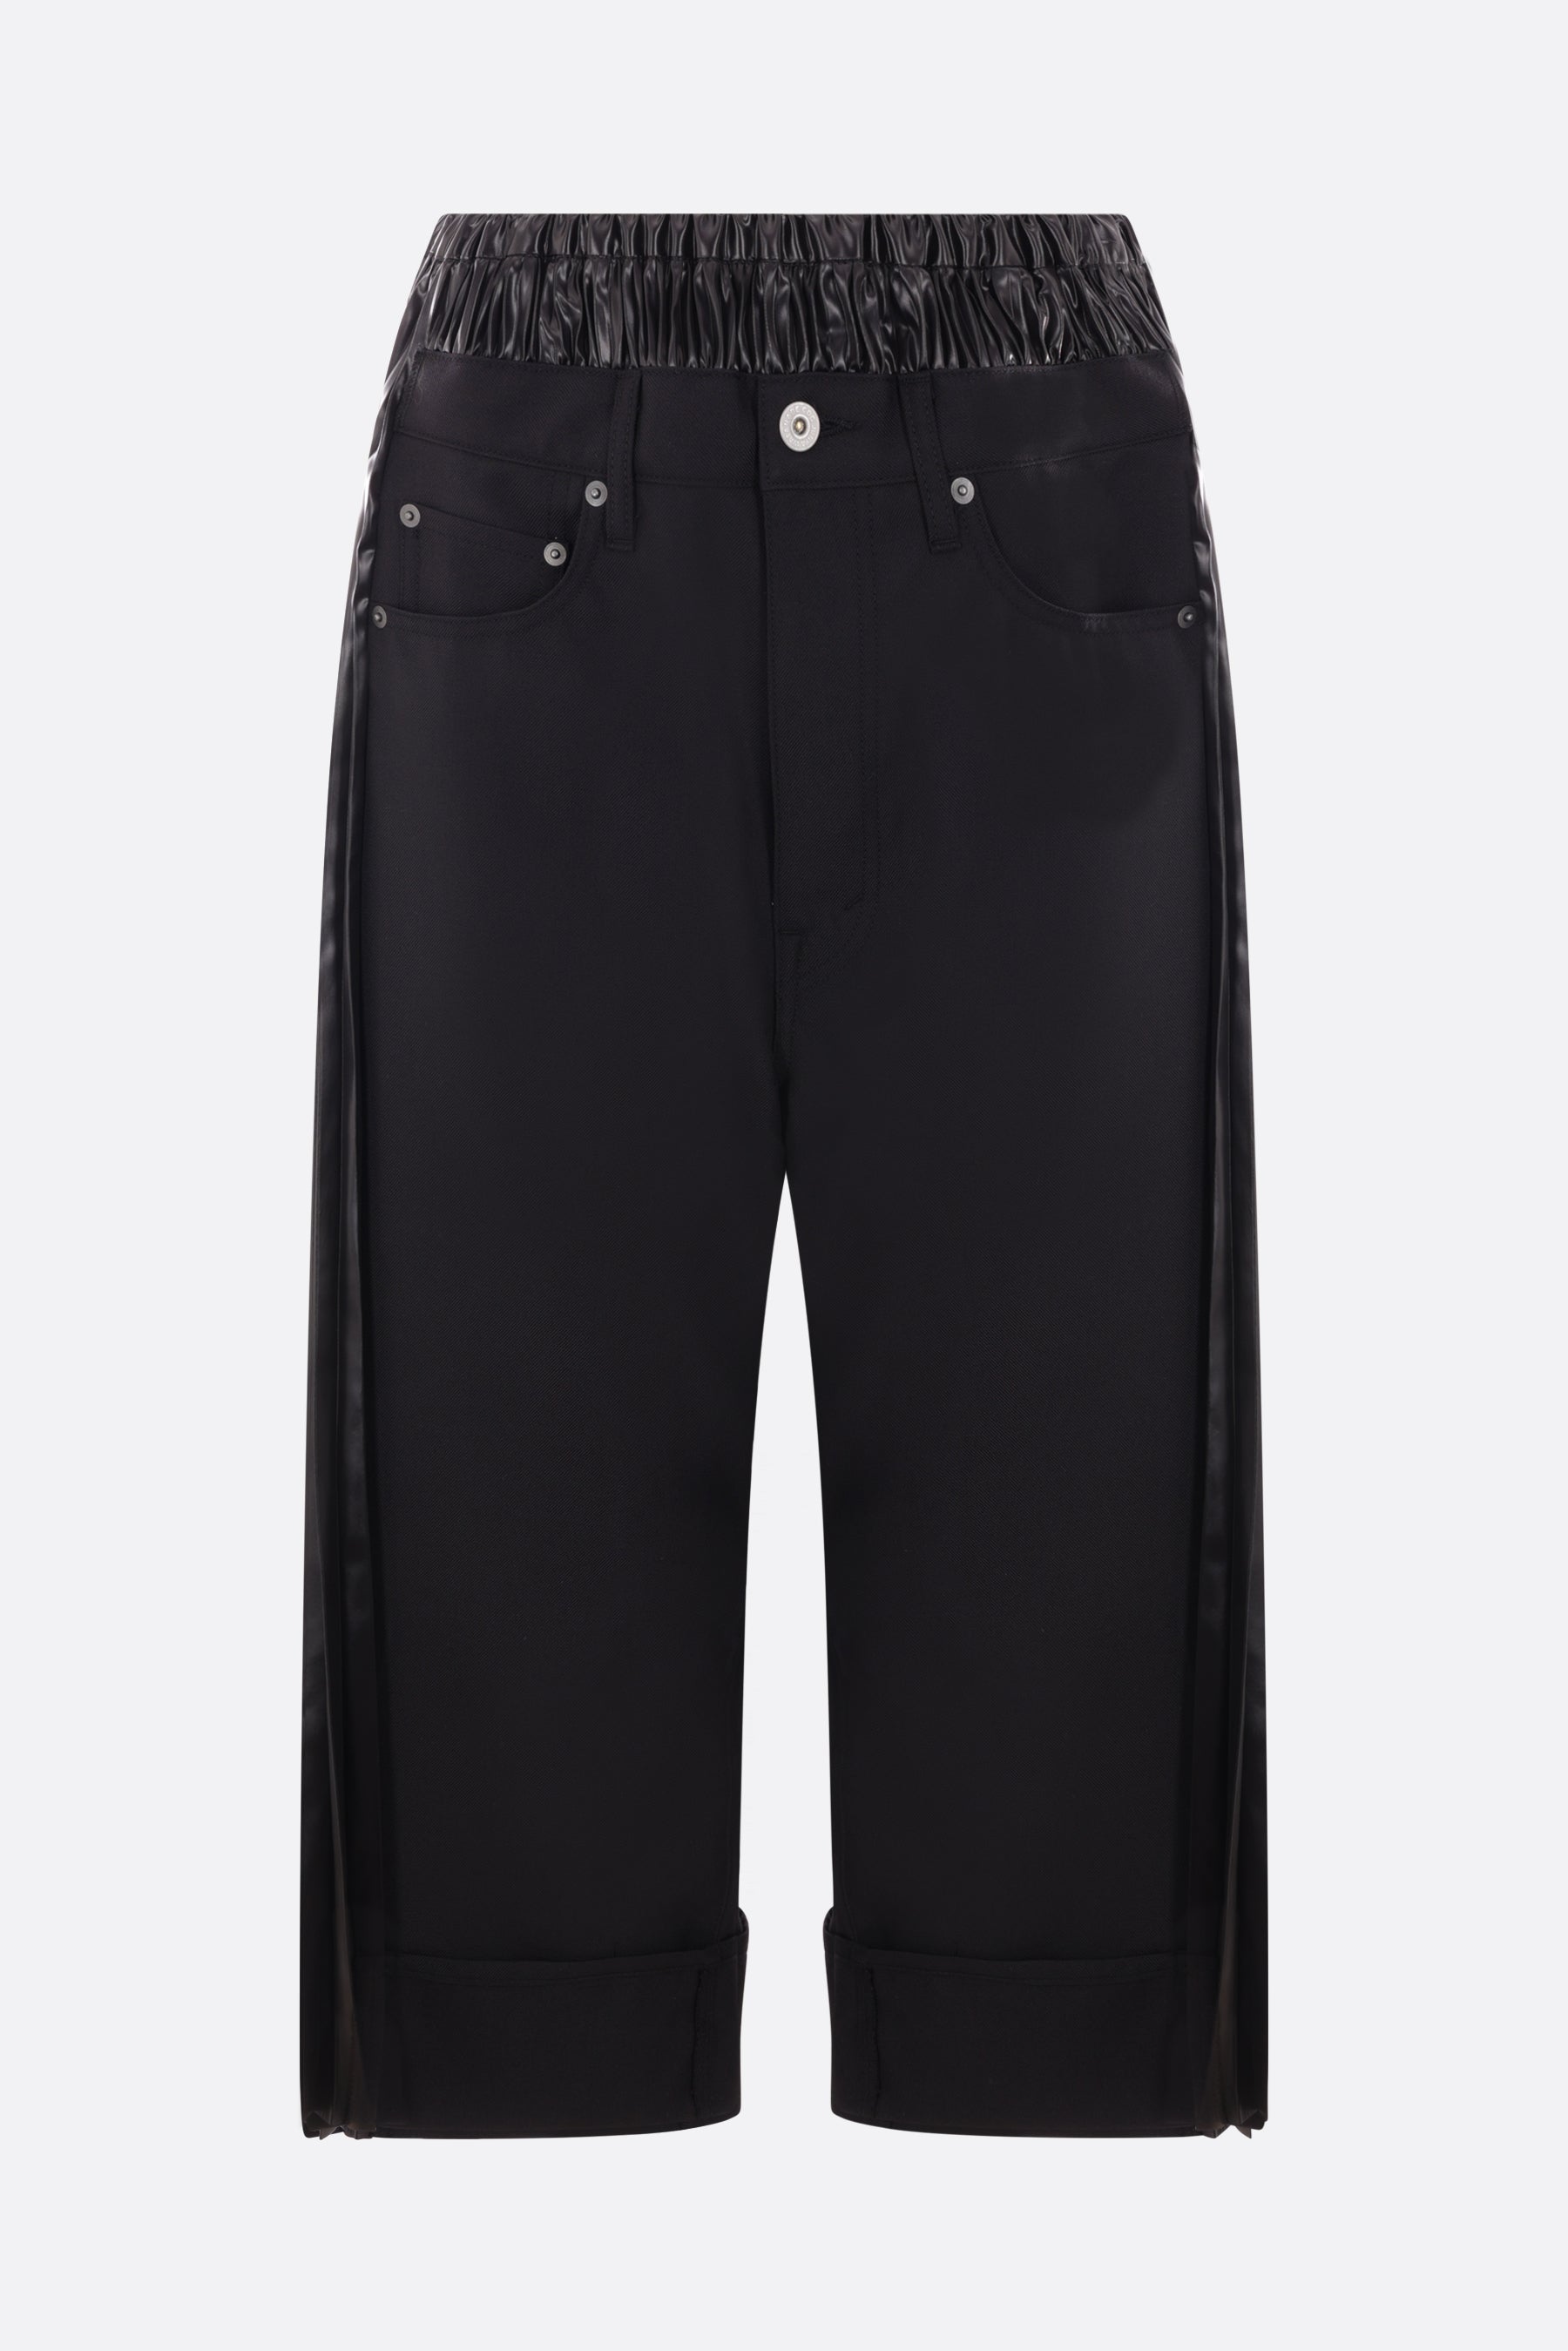 pantalone cropped in twill e nylon lucido plissé